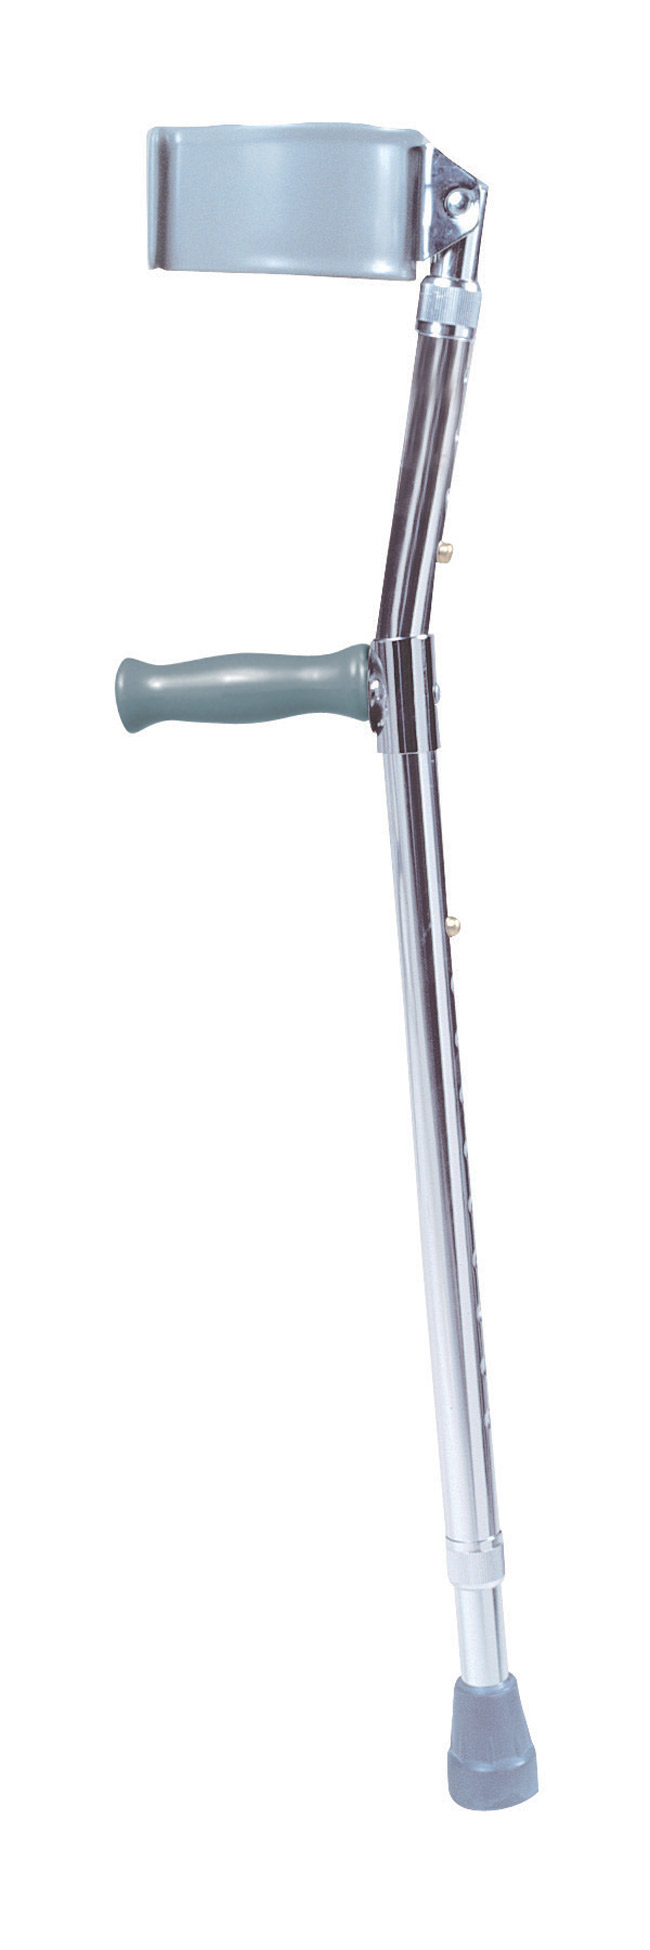 Steel Forearm Crutch Adult